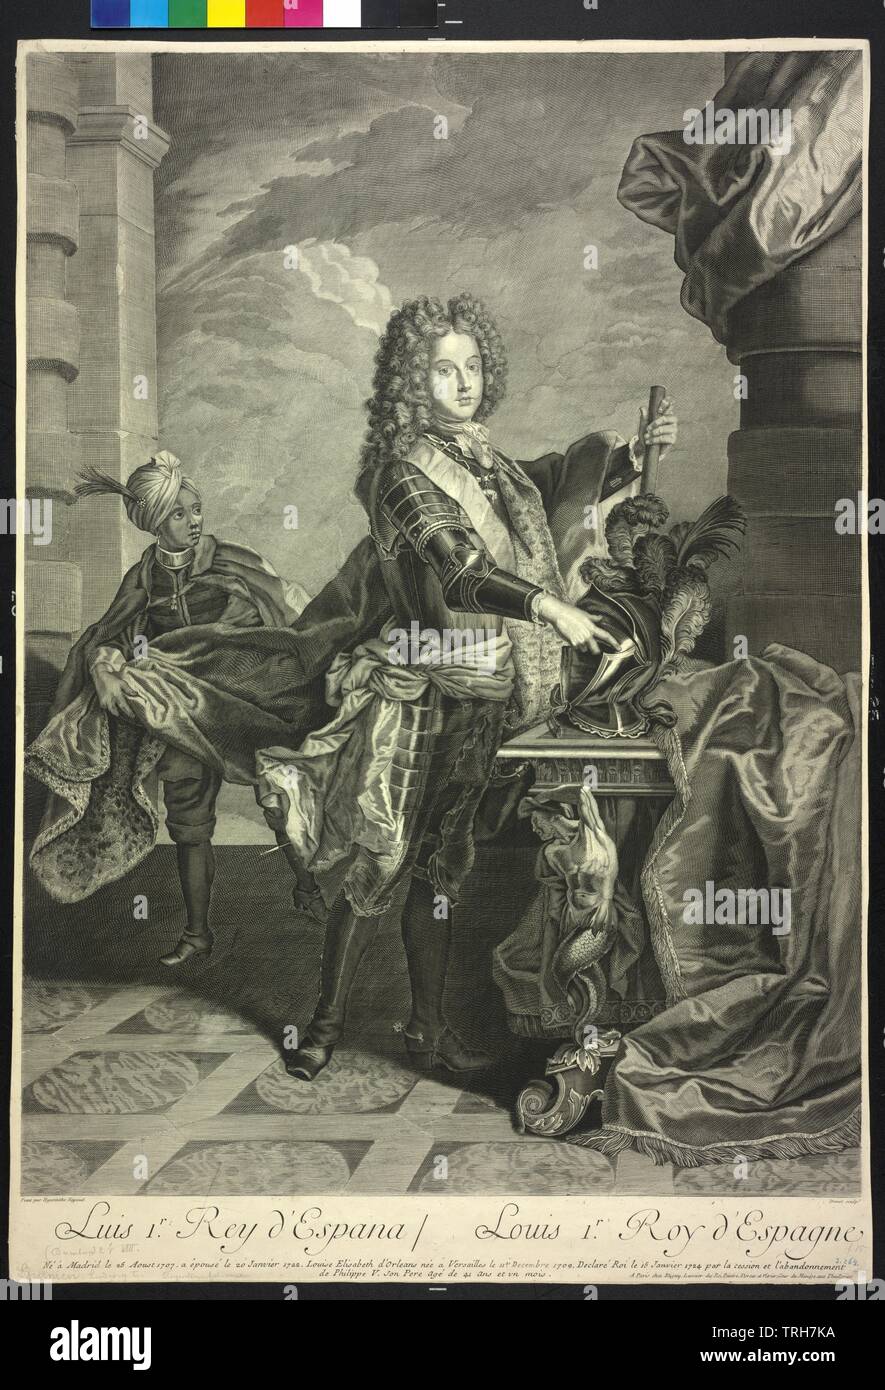 Ludwig I., König von Spanien, Kupferstich von Drevet basierend auf einem Gemälde von Hyacinthe Rigaud, Additional-Rights - Clearance-Info - Not-Available Stockfoto